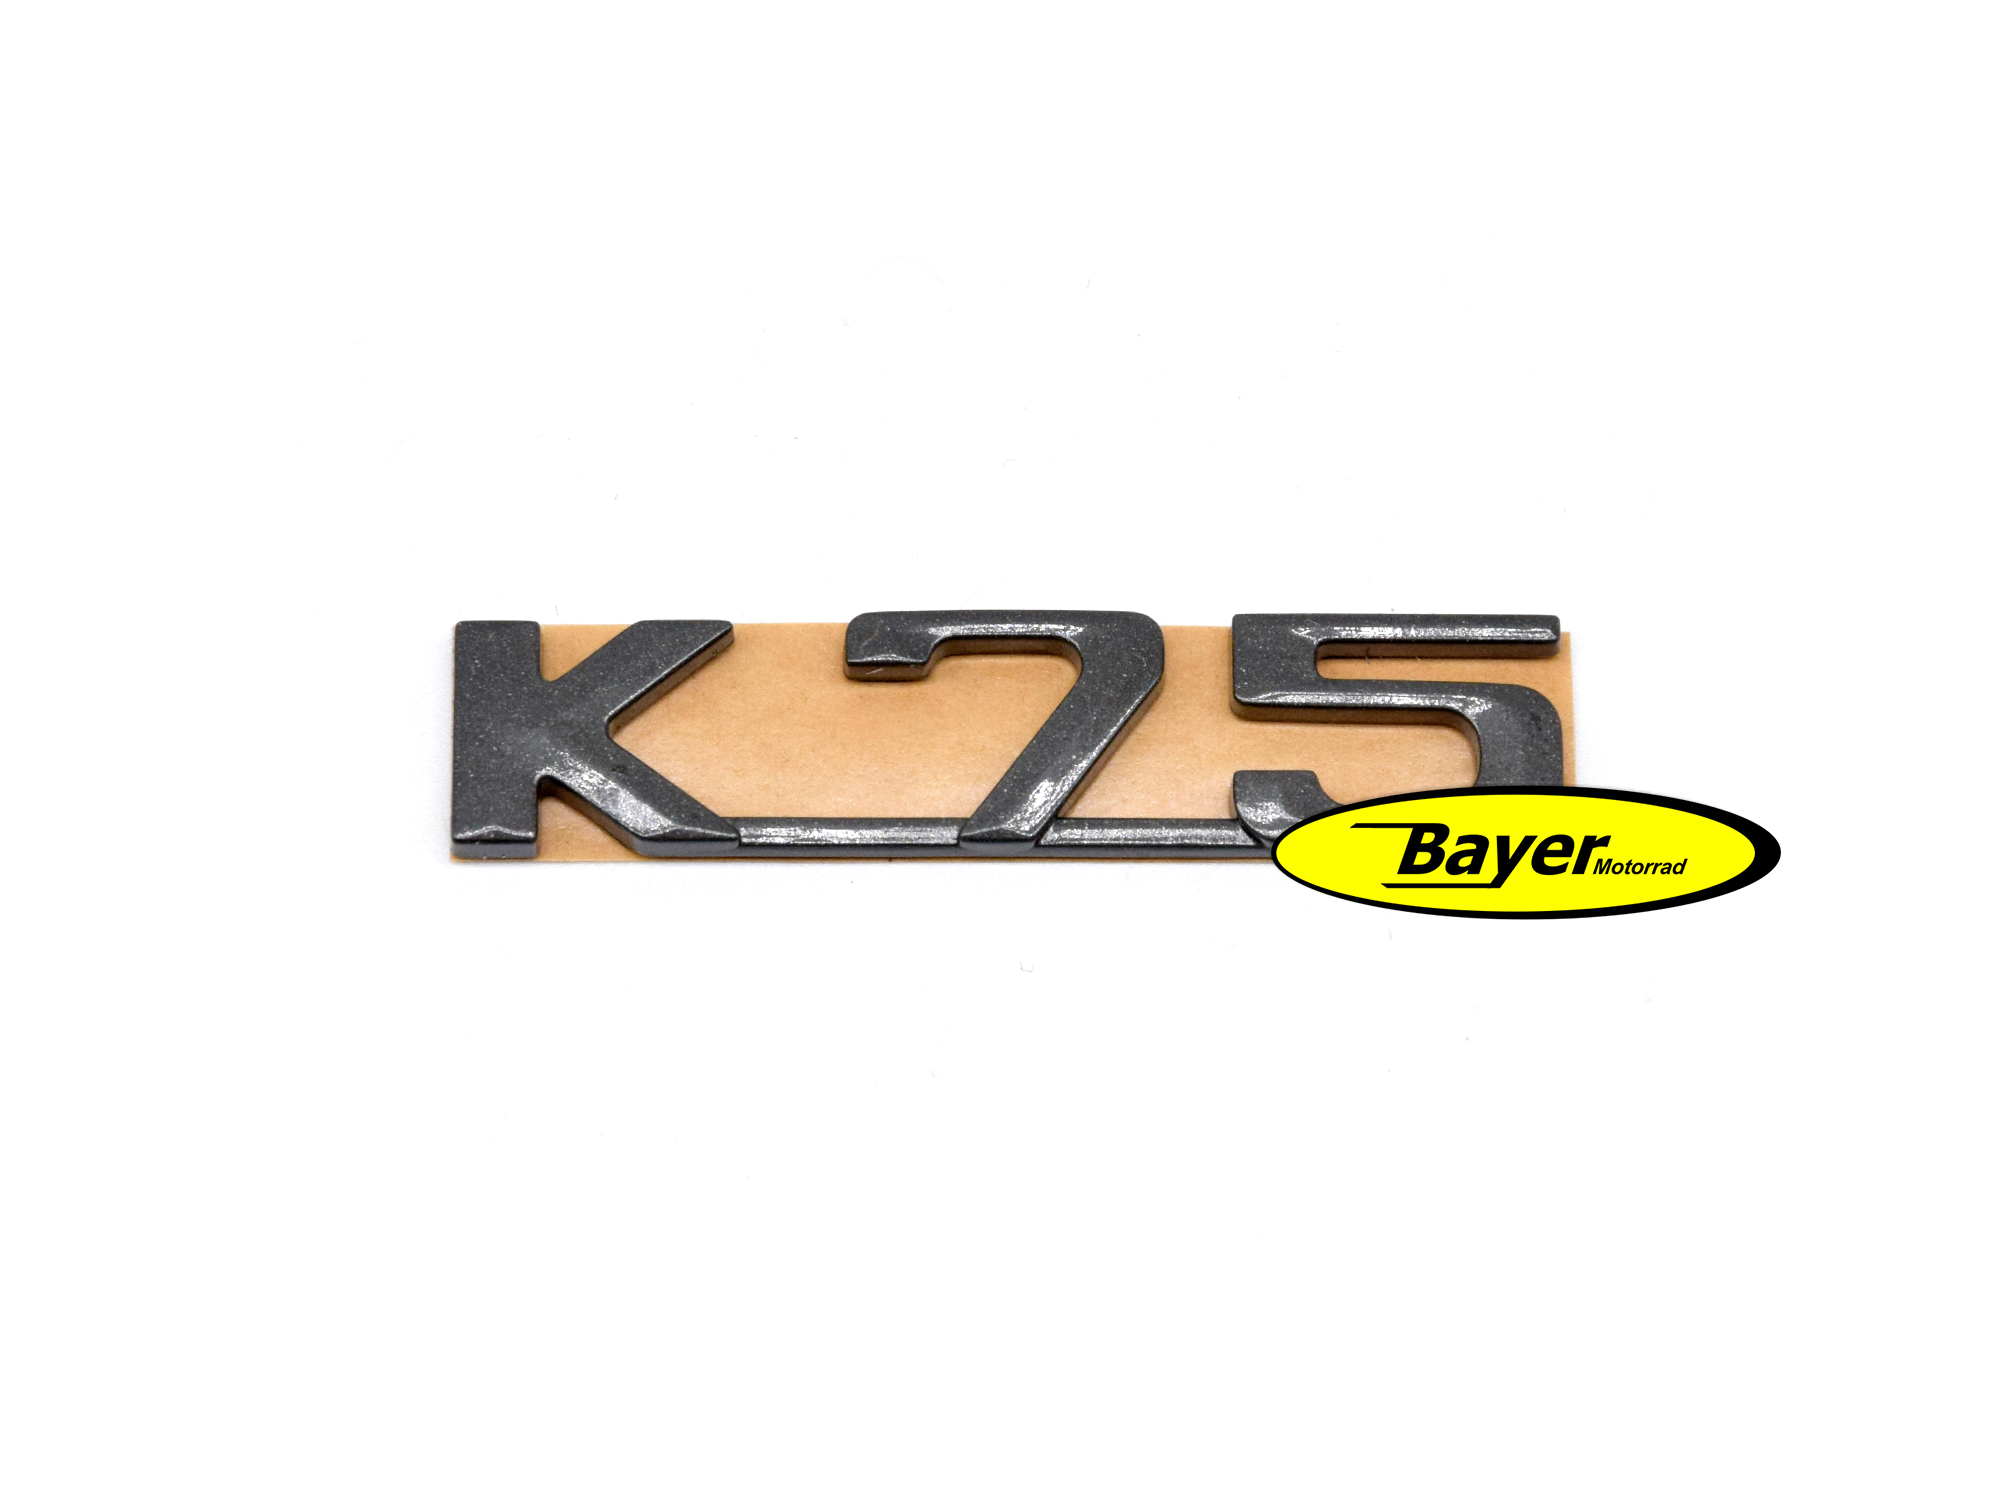 Emblema K75 nero, per tutti i modelli BMW K75